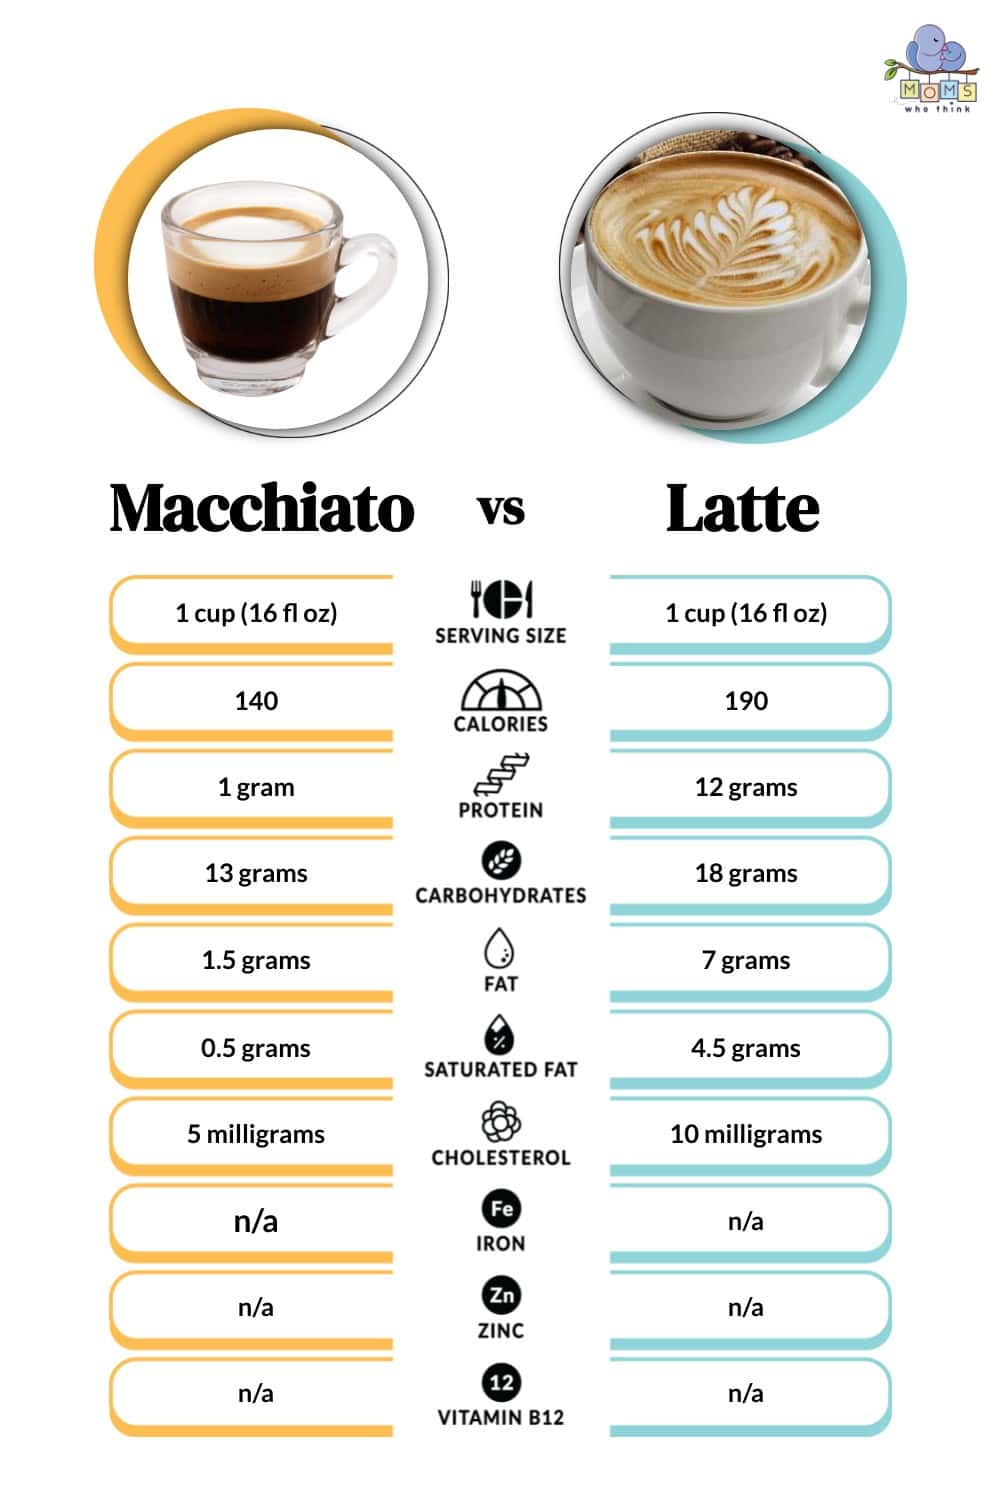 Macchiato vs Latte Nutritional Facts